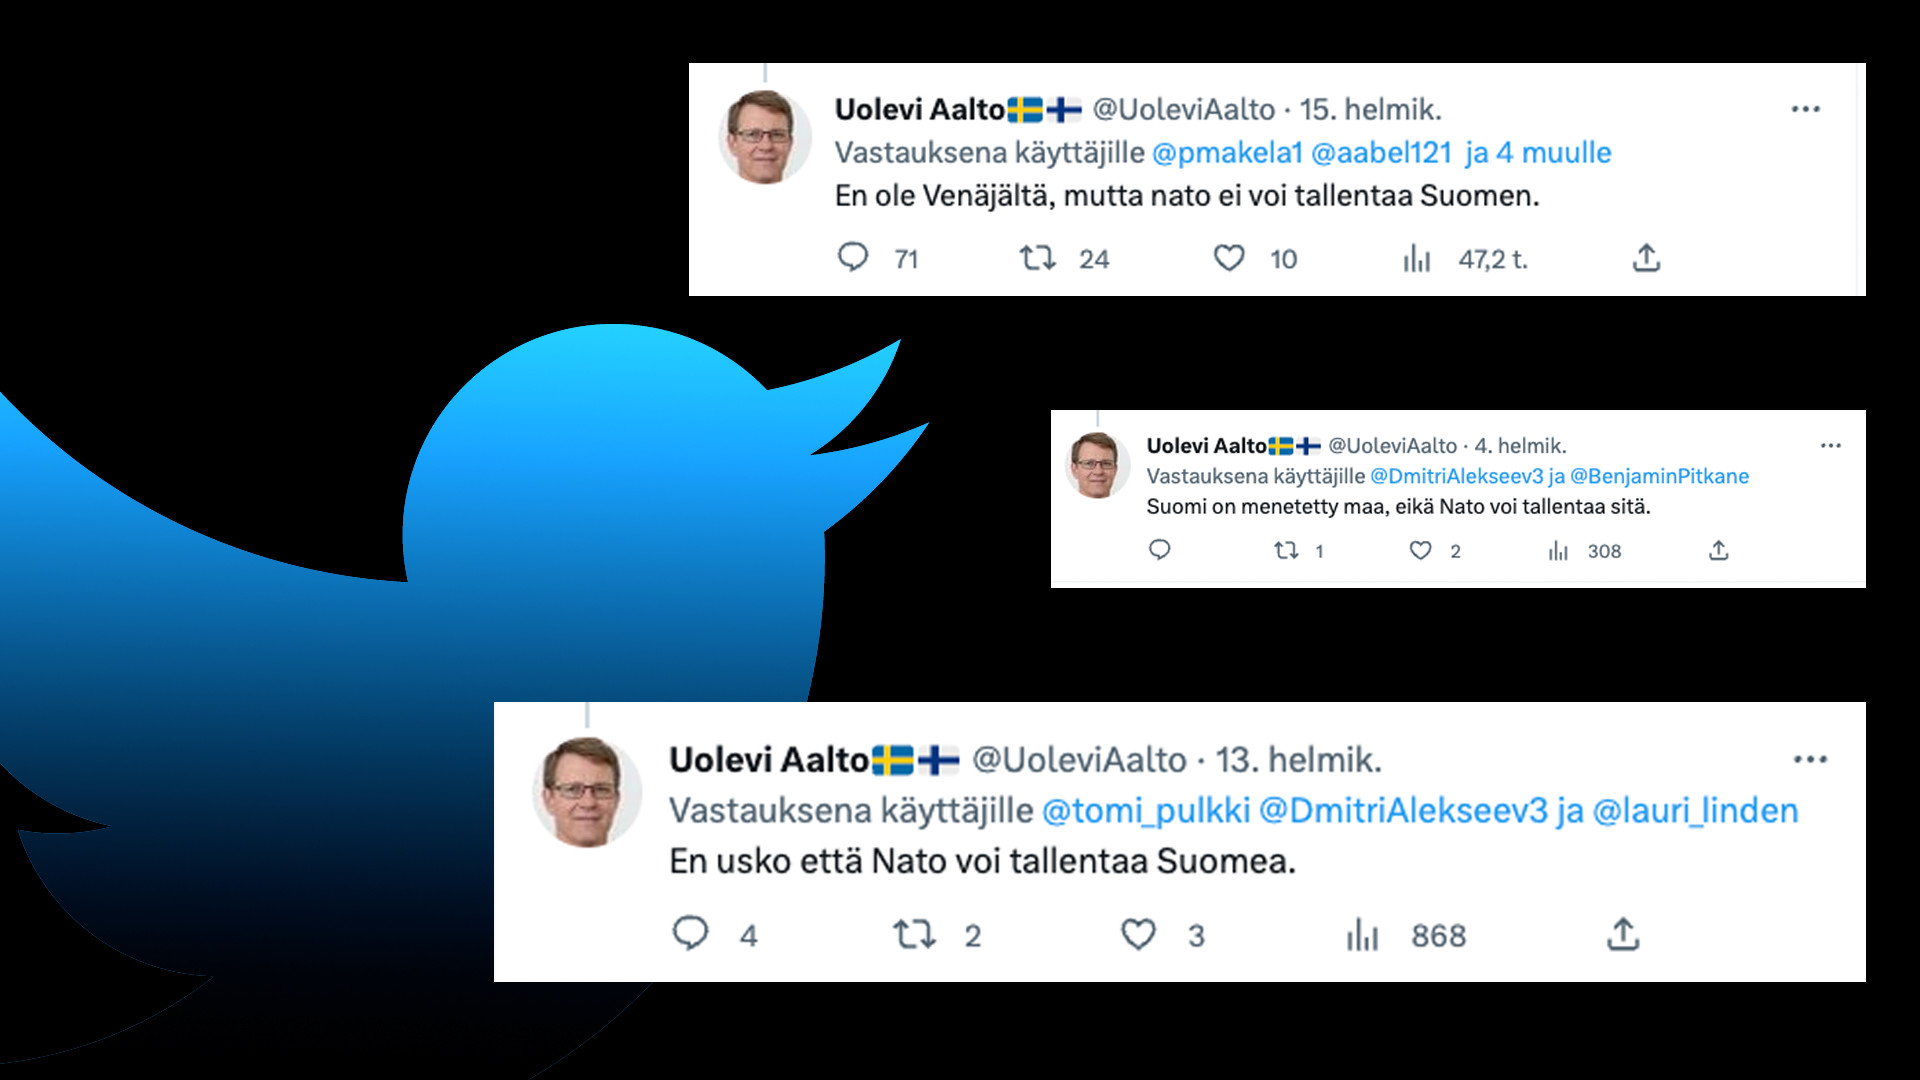 Finnish grammar defeats pro-Russian trolls